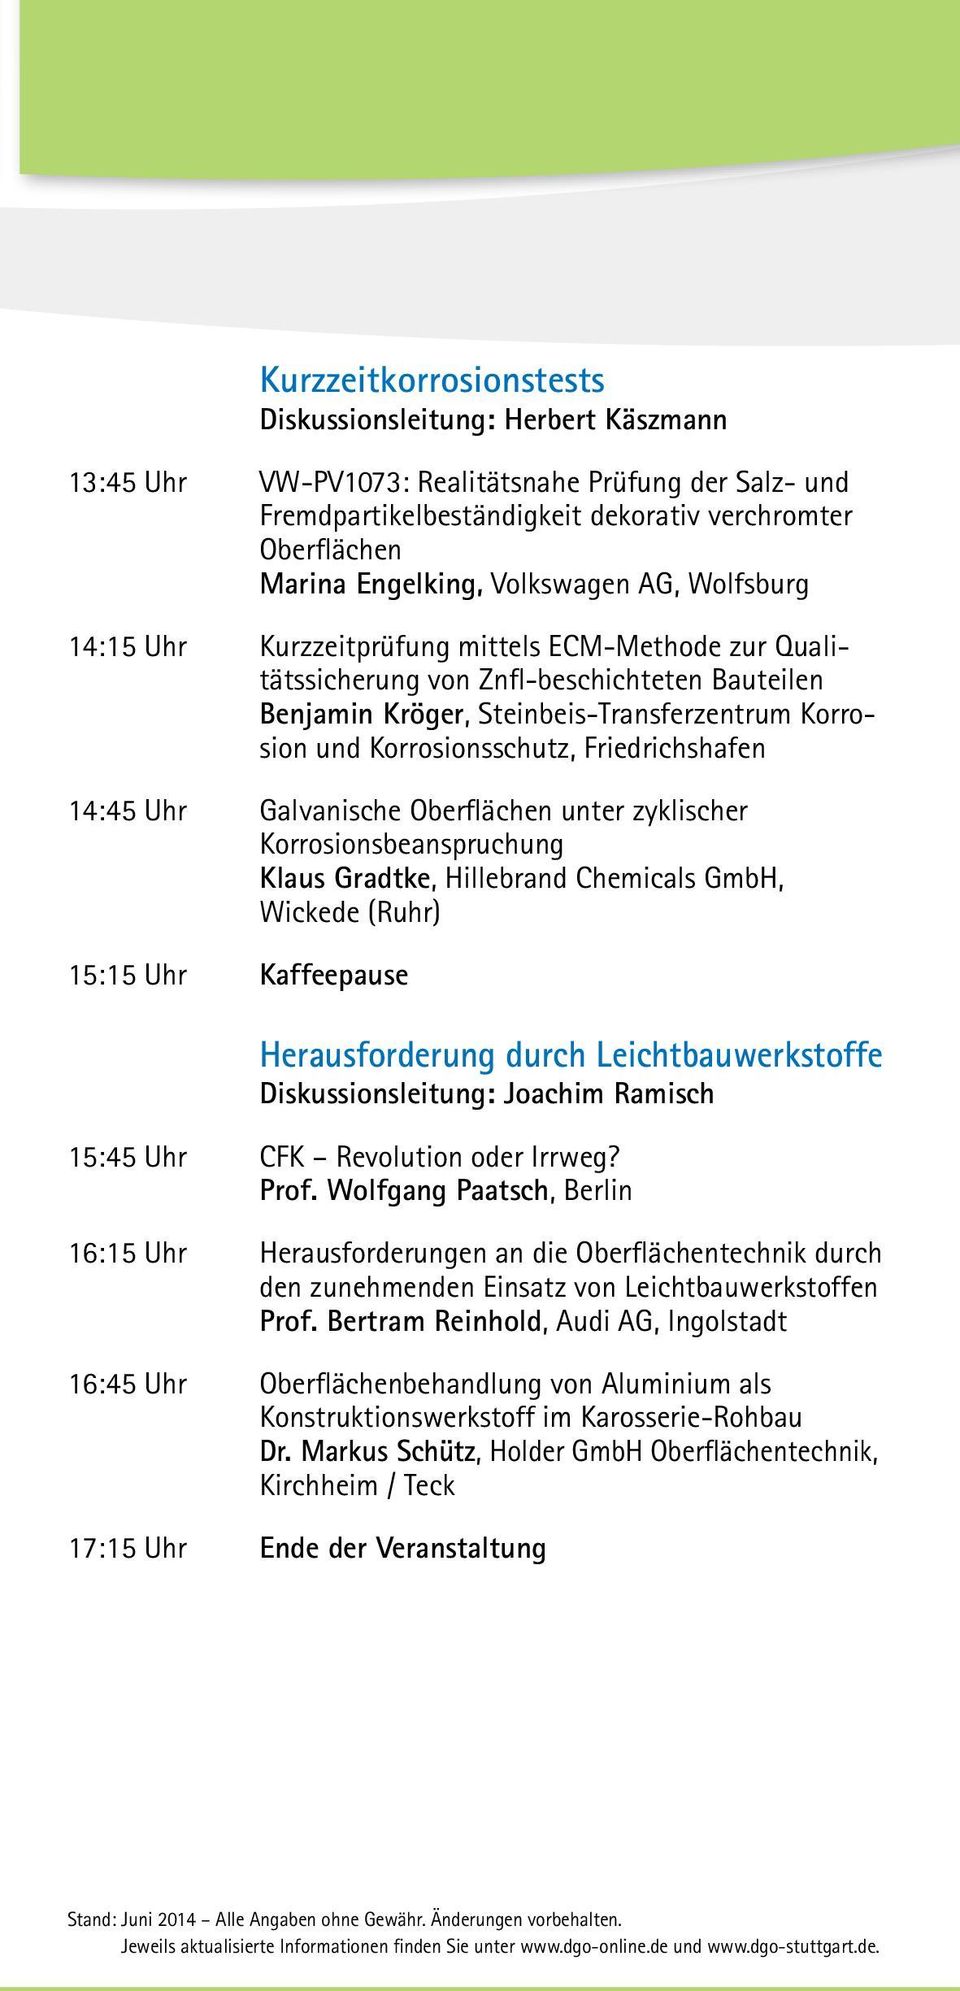 Korrosionsschutz, Friedrichshafen 14:45 Uhr Galvanische Oberflächen unter zyklischer Korrosionsbeanspruchung Klaus Gradtke, Hillebrand Chemicals GmbH, Wickede (Ruhr) 15:15 Uhr Kaffeepause